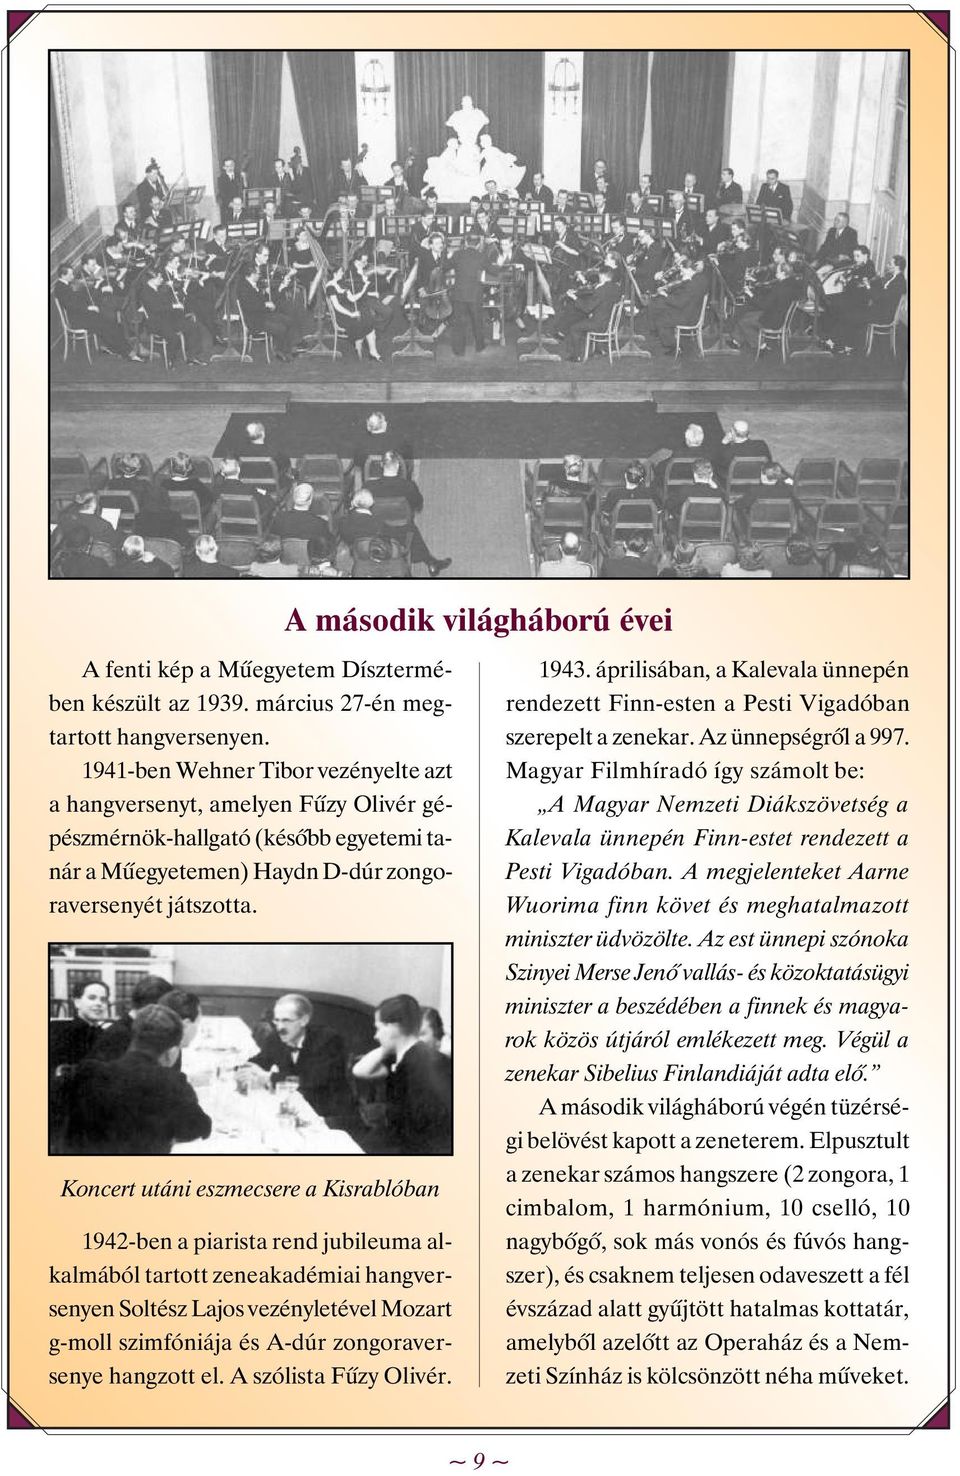 Koncert utáni eszmecsere a Kisrablóban 1942-ben a piarista rend jubileuma alkalmából tartott zeneakadémiai hangversenyen Soltész Lajos vezényletével Mozart g-moll szimfóniája és A-dúr zongoraversenye